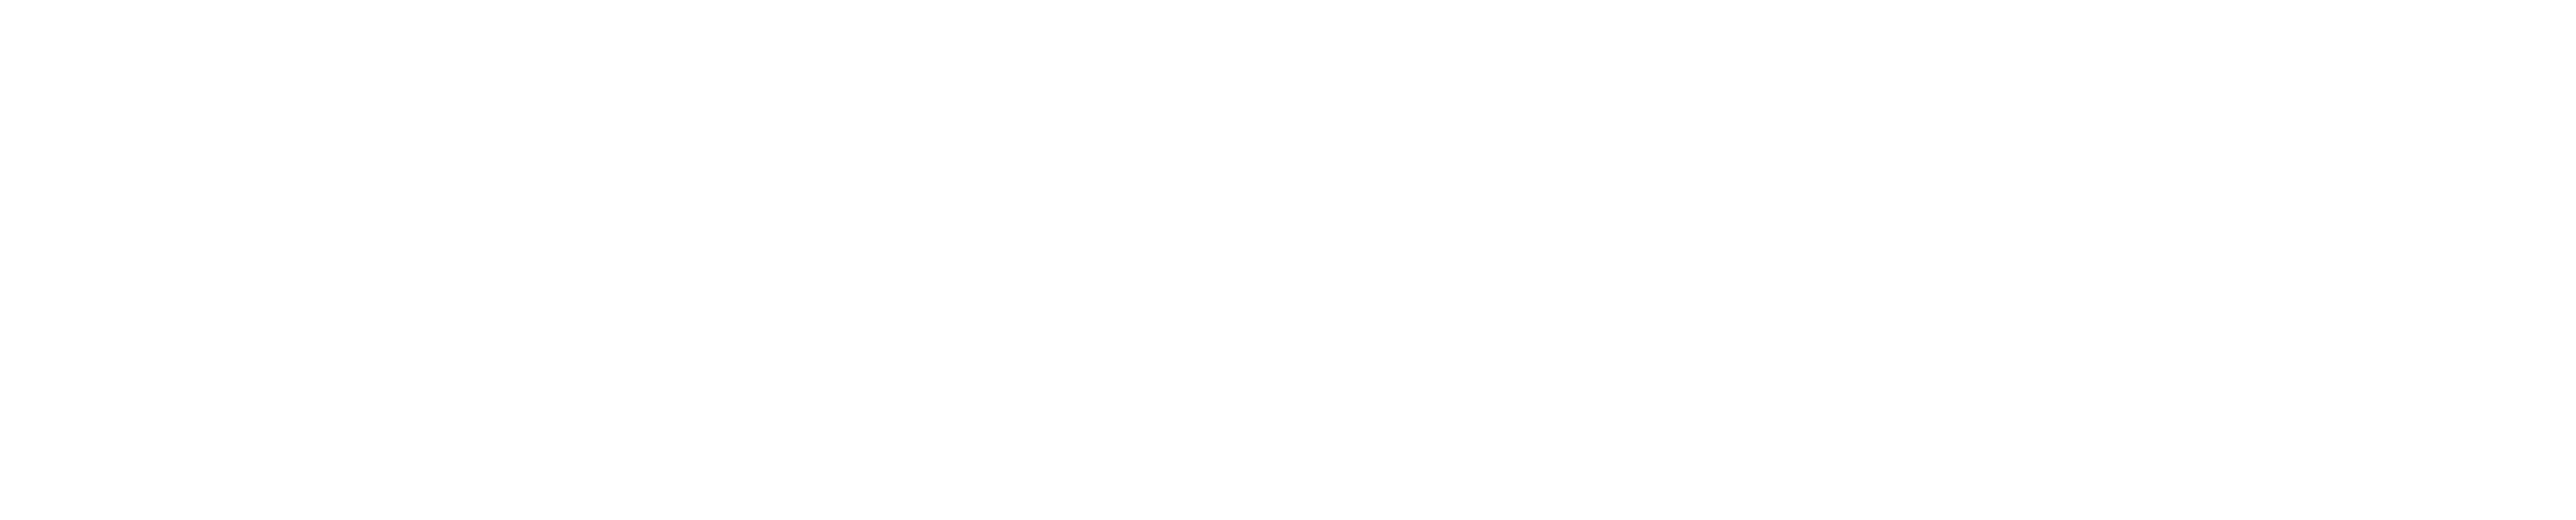 Golden Mind Logo